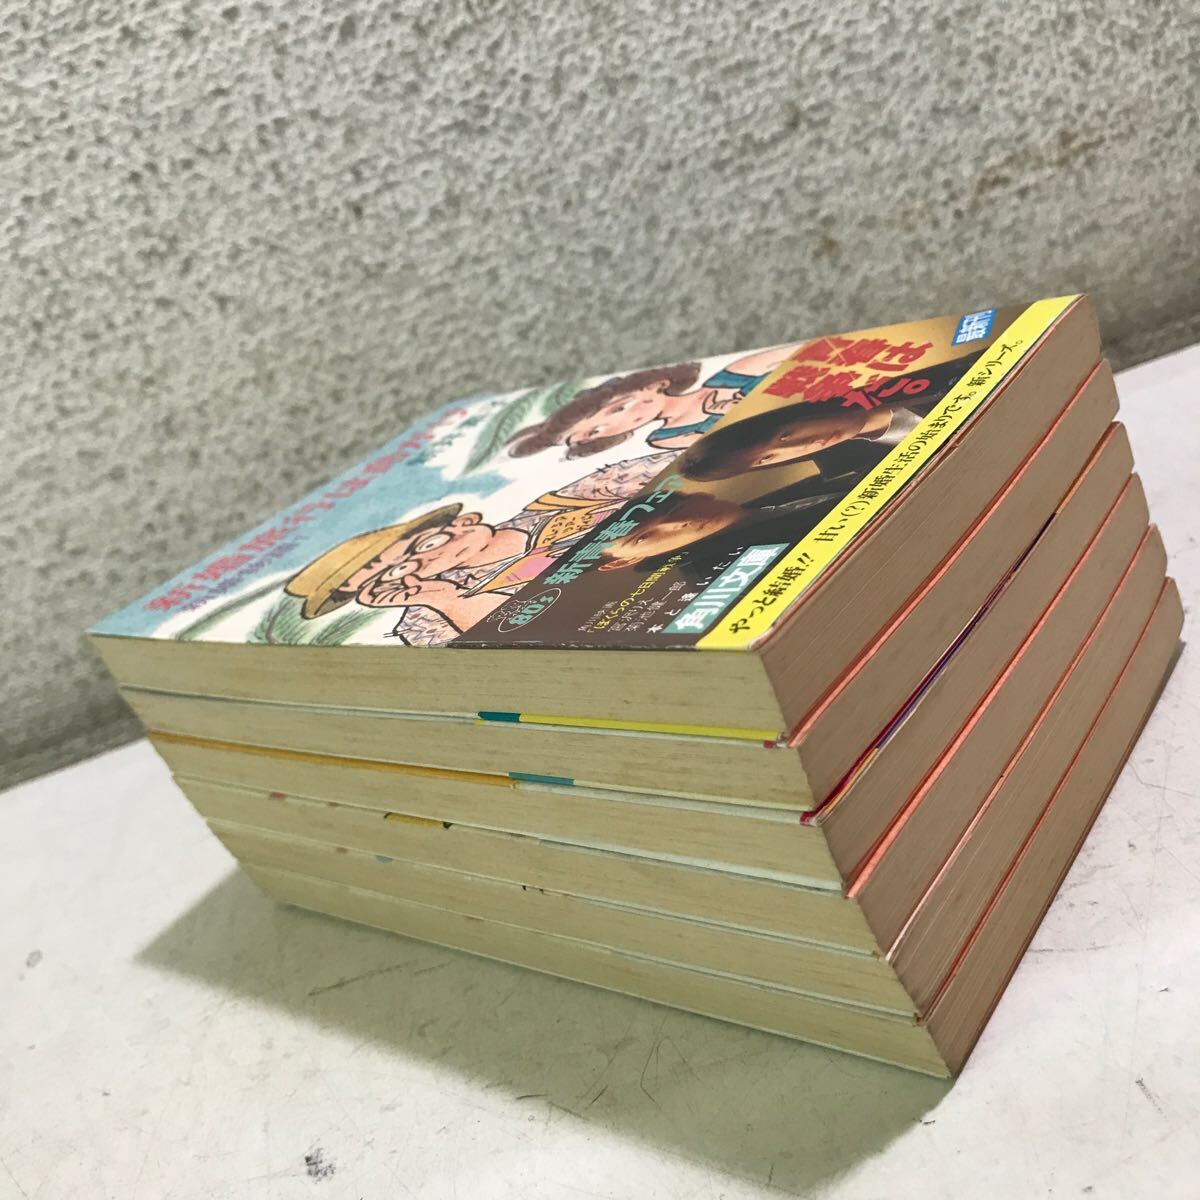 B01* библиотека книга@ Arai Motoko продажа комплектом 6 шт. комплект новый . история 3 шт / брак история 3 шт 1996 год -98 год выпуск Kadokawa Shoten с поясом оби *240316